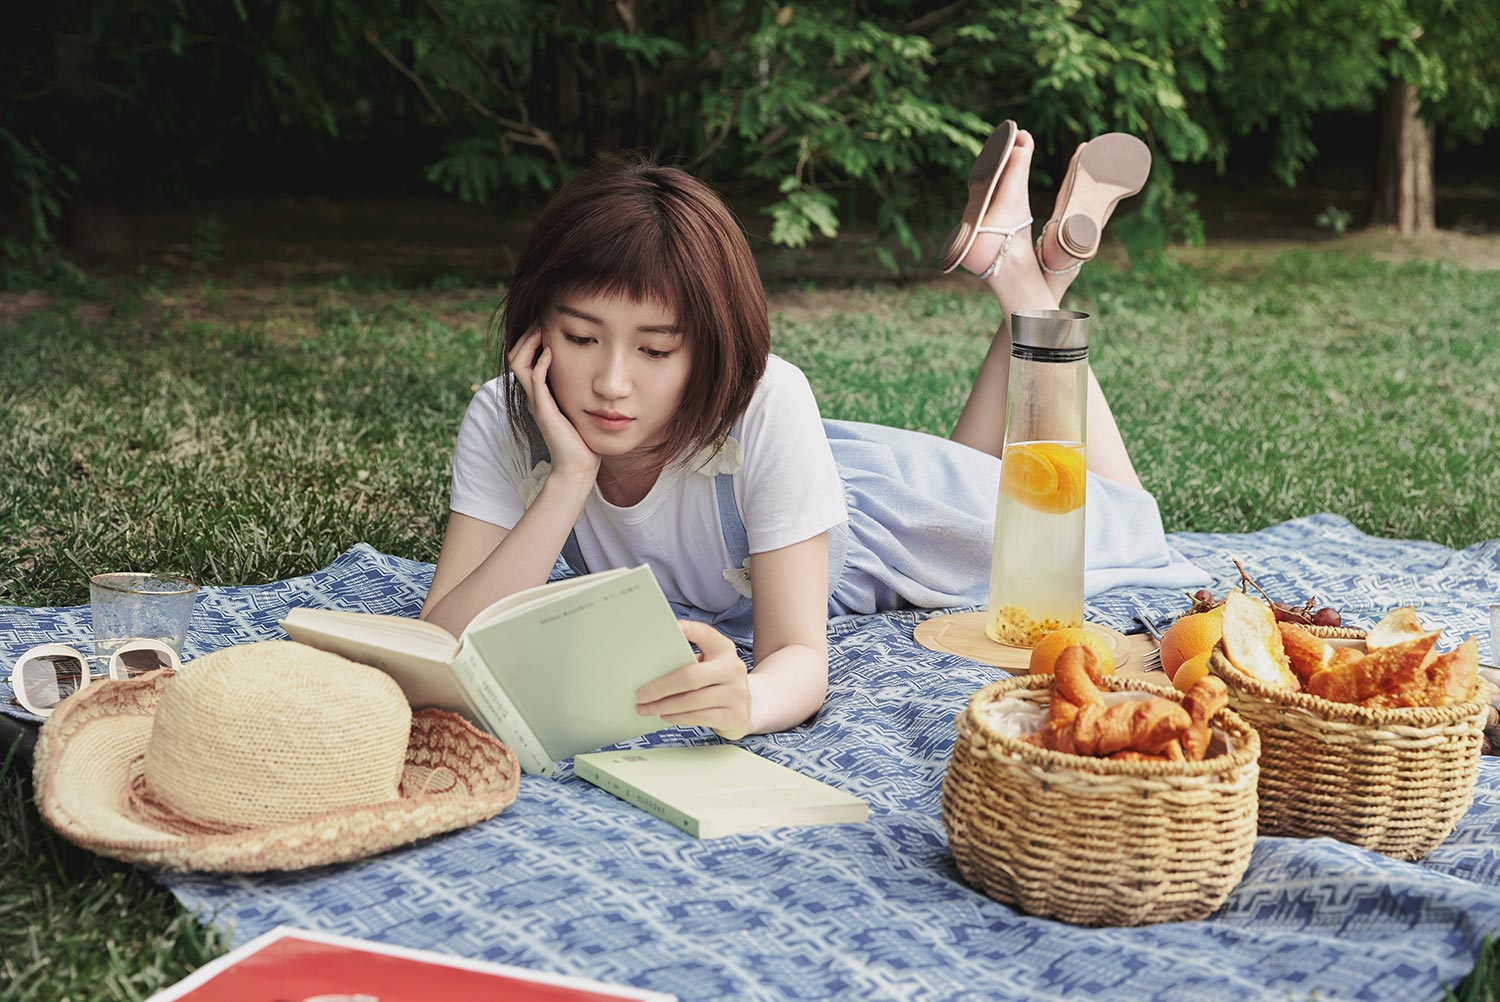 苏青田园造型满分 恬静少女享受午后阅读时光